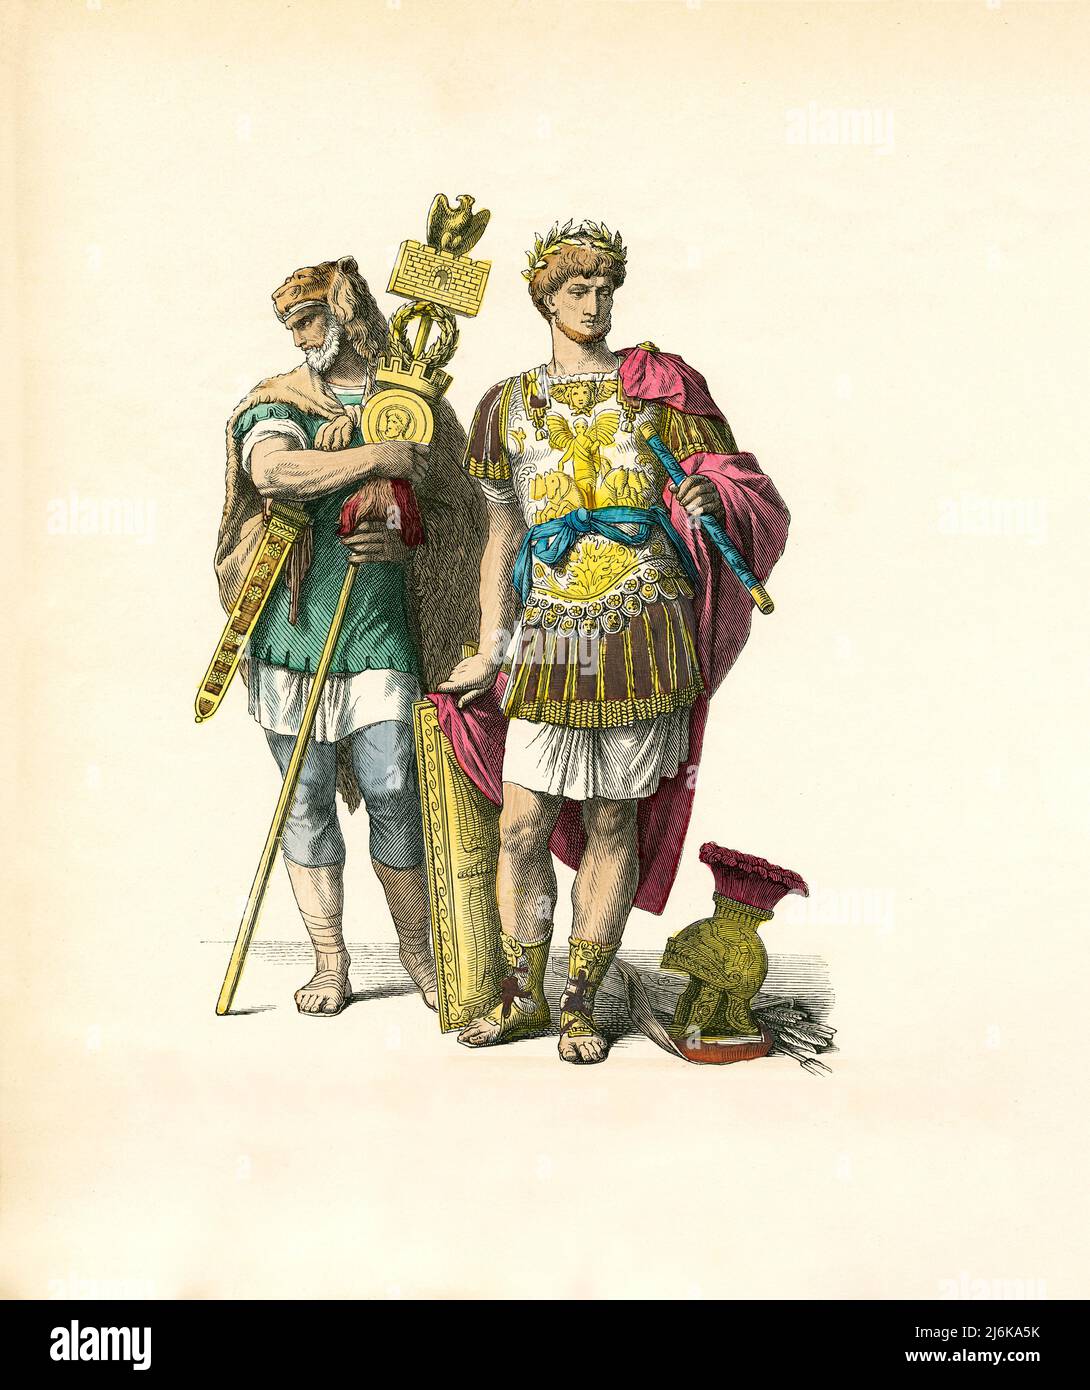 Porteur standard et général romain, Rome antique, Illustration, l'histoire du costume, Braun & Schneider, Munich, Allemagne, 1861-1880 Banque D'Images